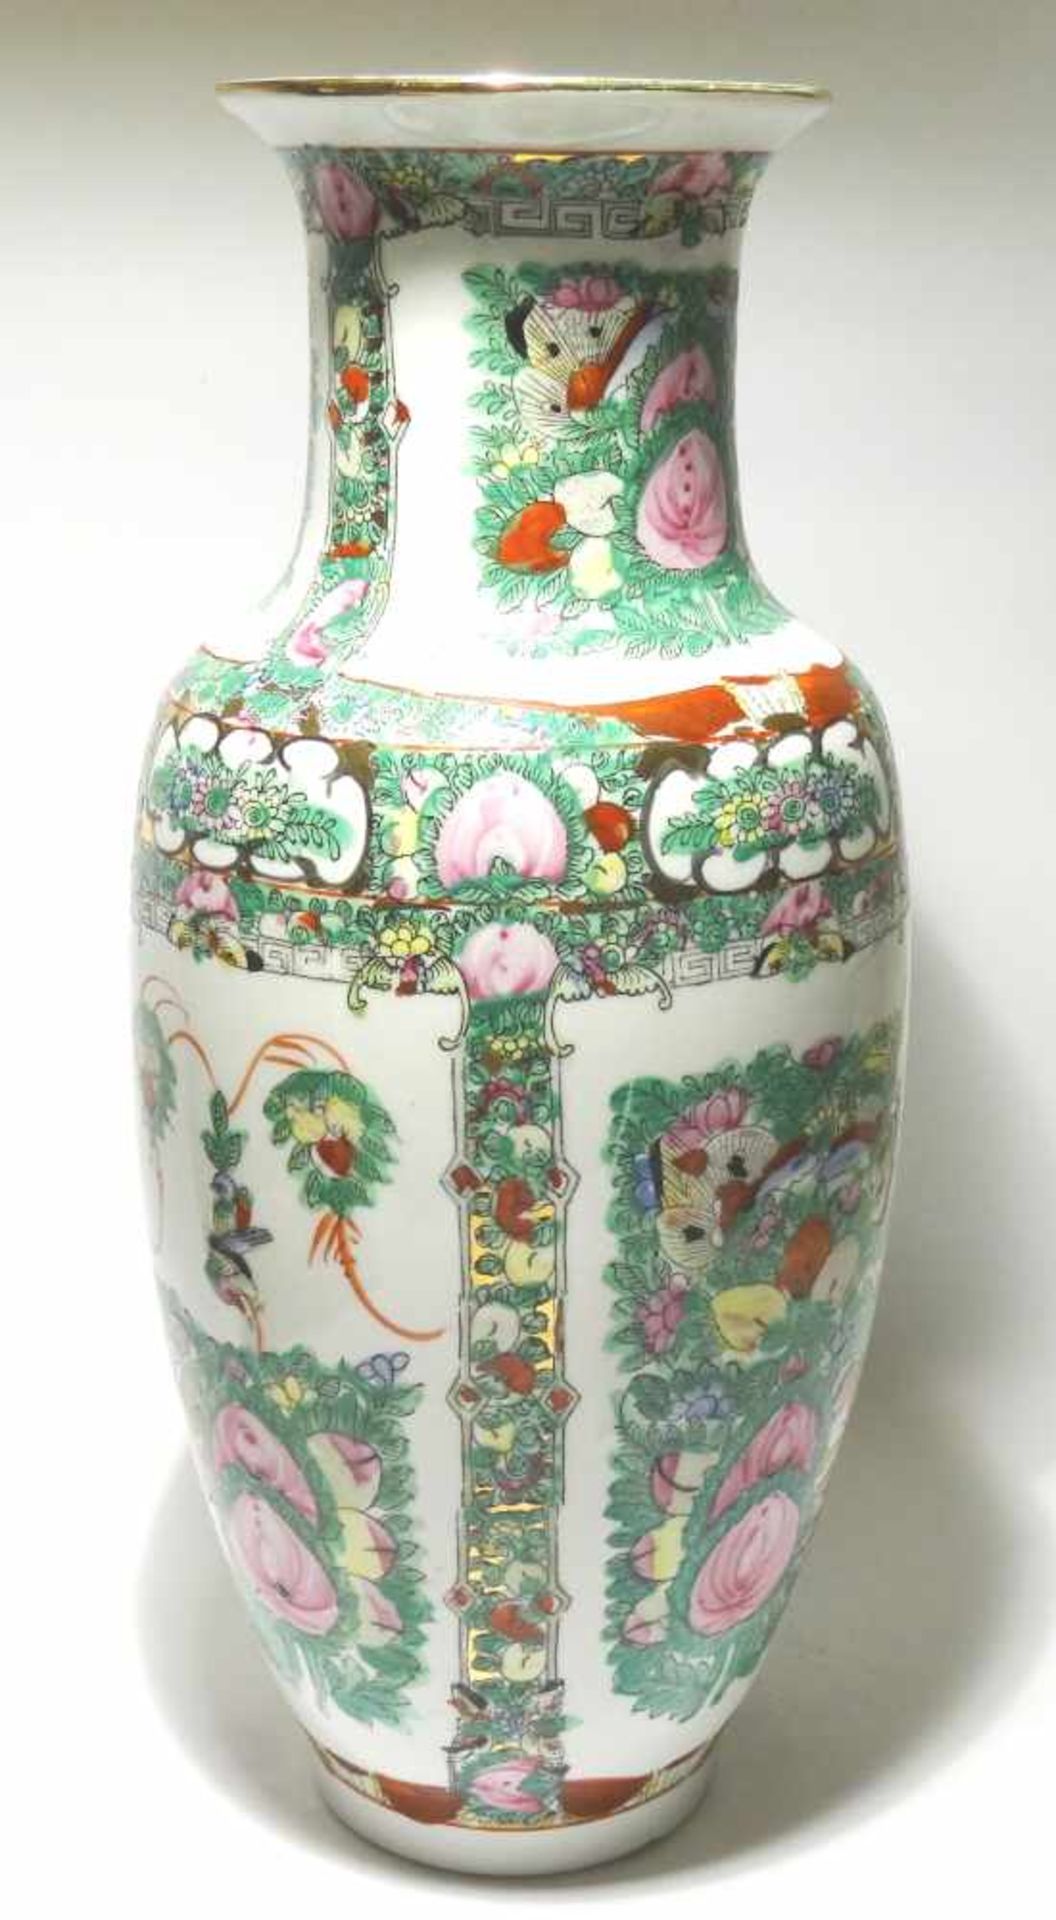 Vase auch Bodenvase, Höhe ca. 42cm, Durchmesser am Bauch ca. 20cm, signiert